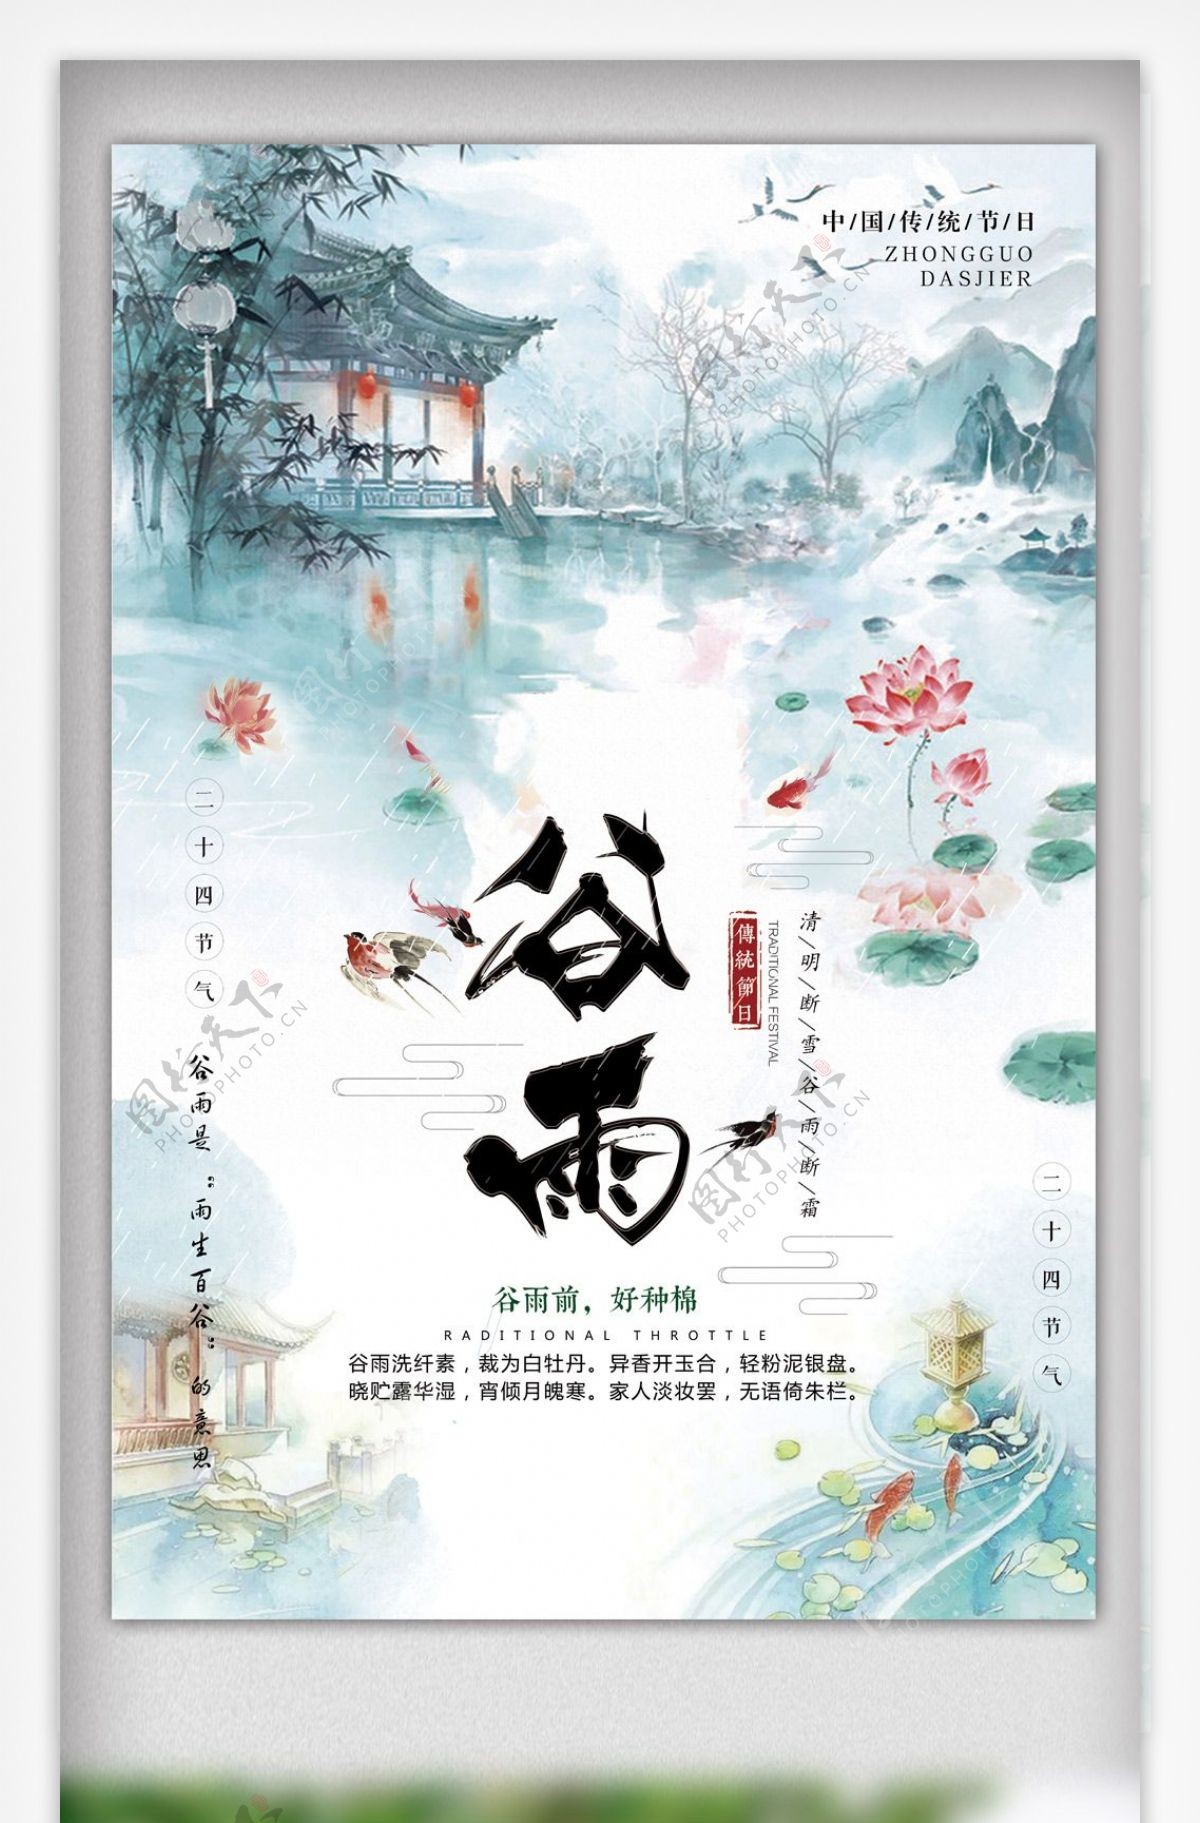 2018简约大气中国传统节日谷雨海报